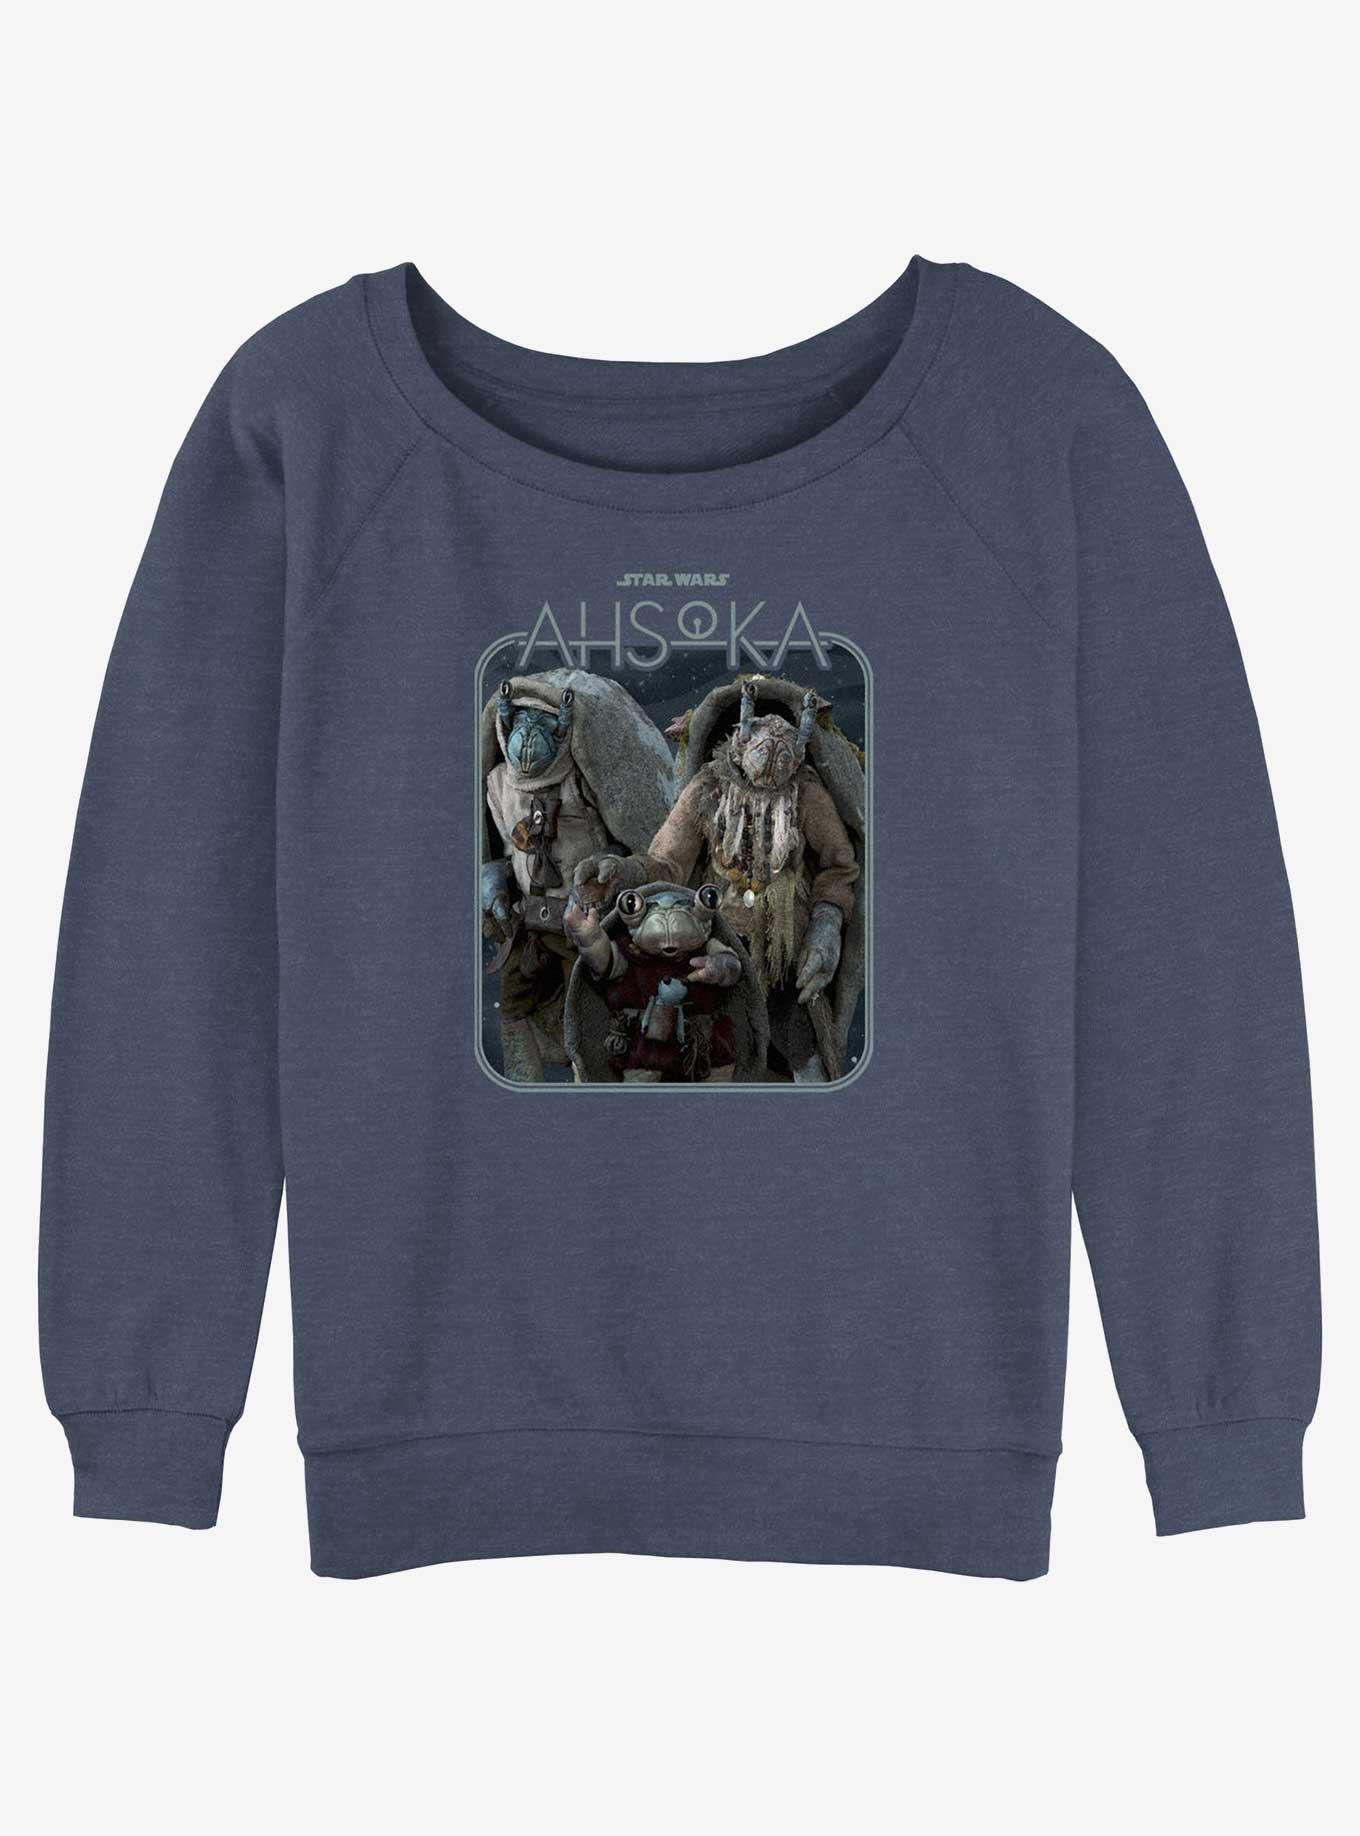 Star Wars Ahsoka The Noti Girls Slouchy Sweatshirt